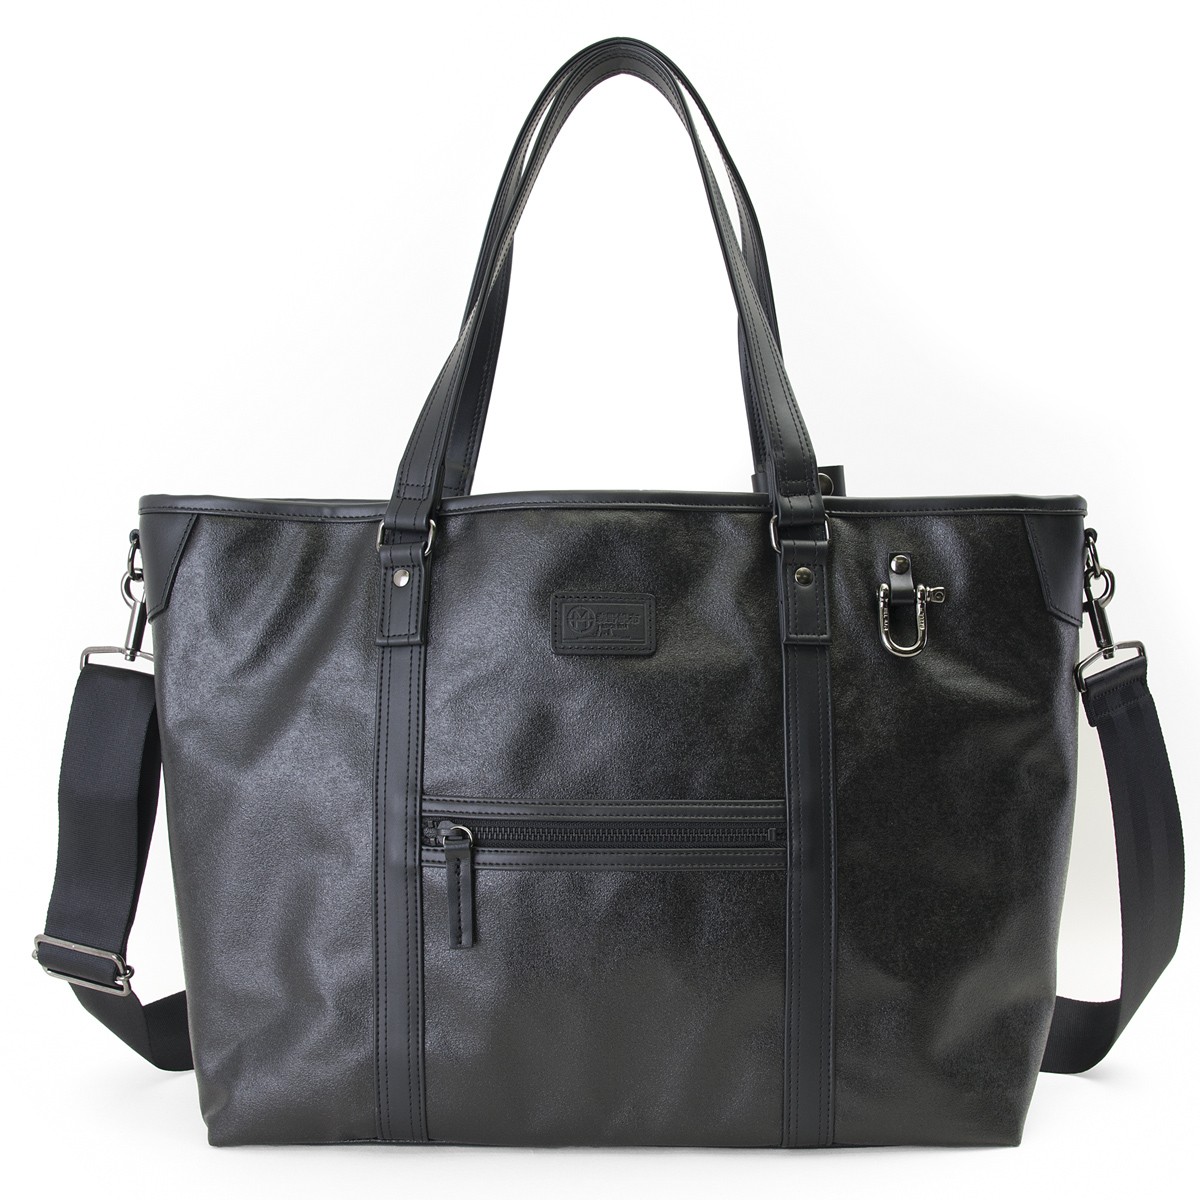 トートバッグ 森野帆布 2WAY Tote Bag Premium Black SF-0515 